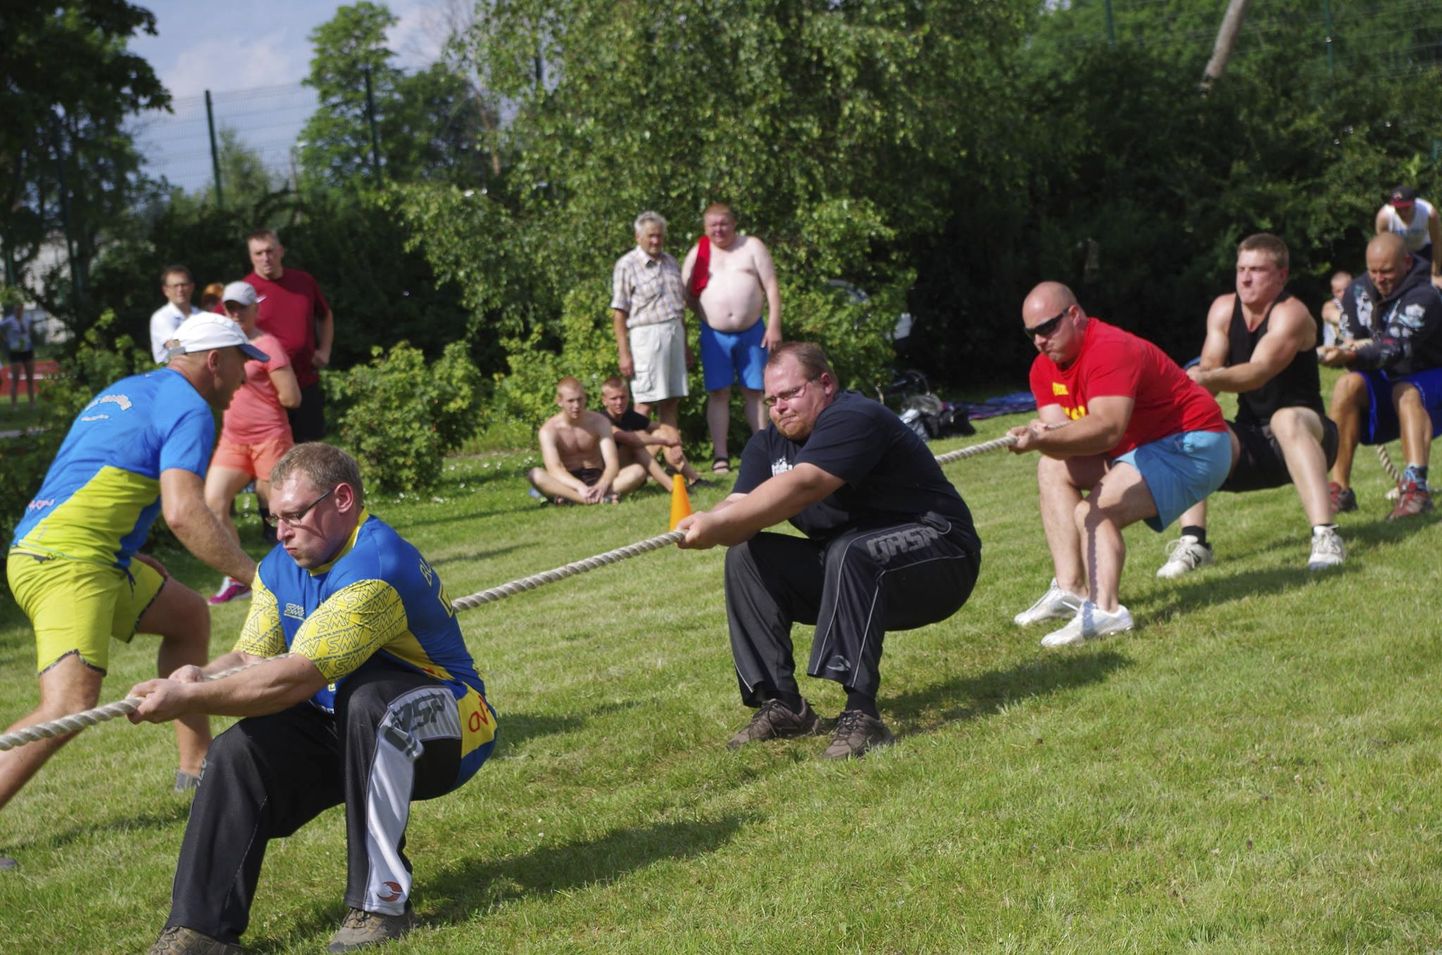 Eestimaa Spordiliidu Jõud korraldatavad valdade suvemängud on tõeline rahvaspordipidu. Üheks populaarsemaks alaks võib pidada köievedu.